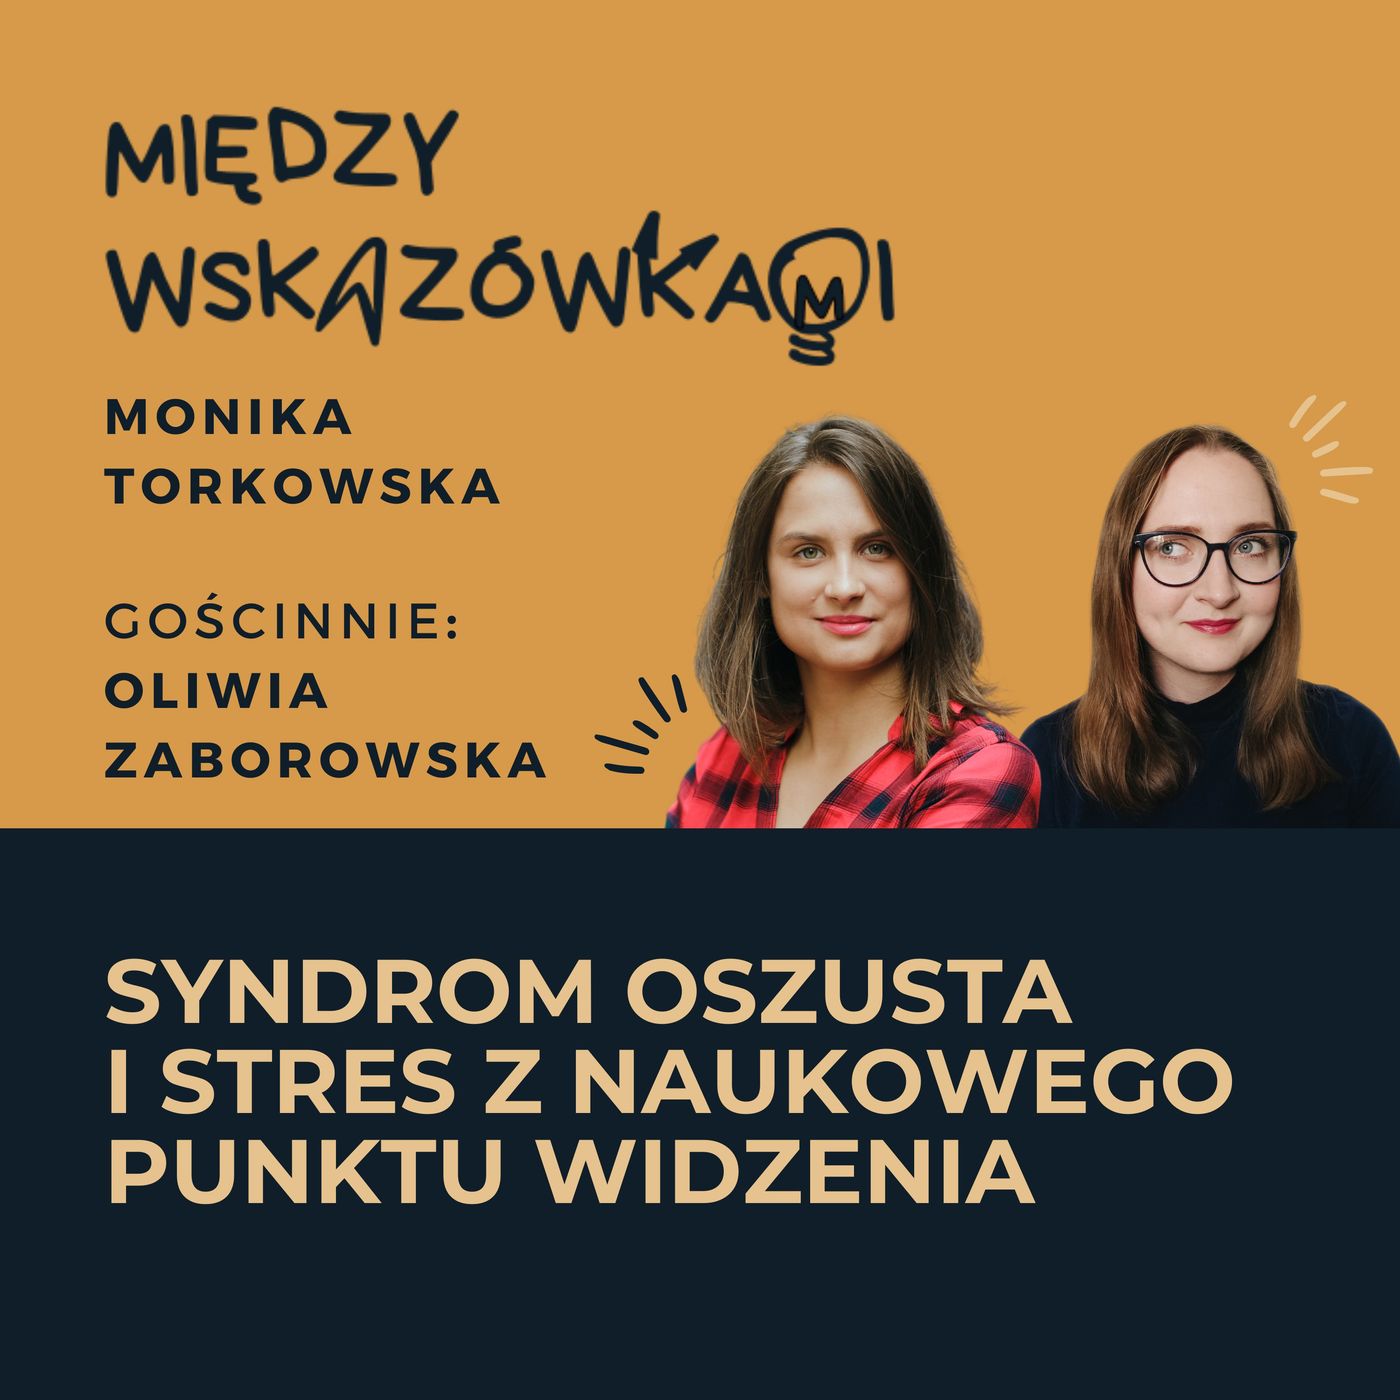 041: Syndrom oszusta a stres. Co mówi nam nauka? | Oliwia Zaborowska